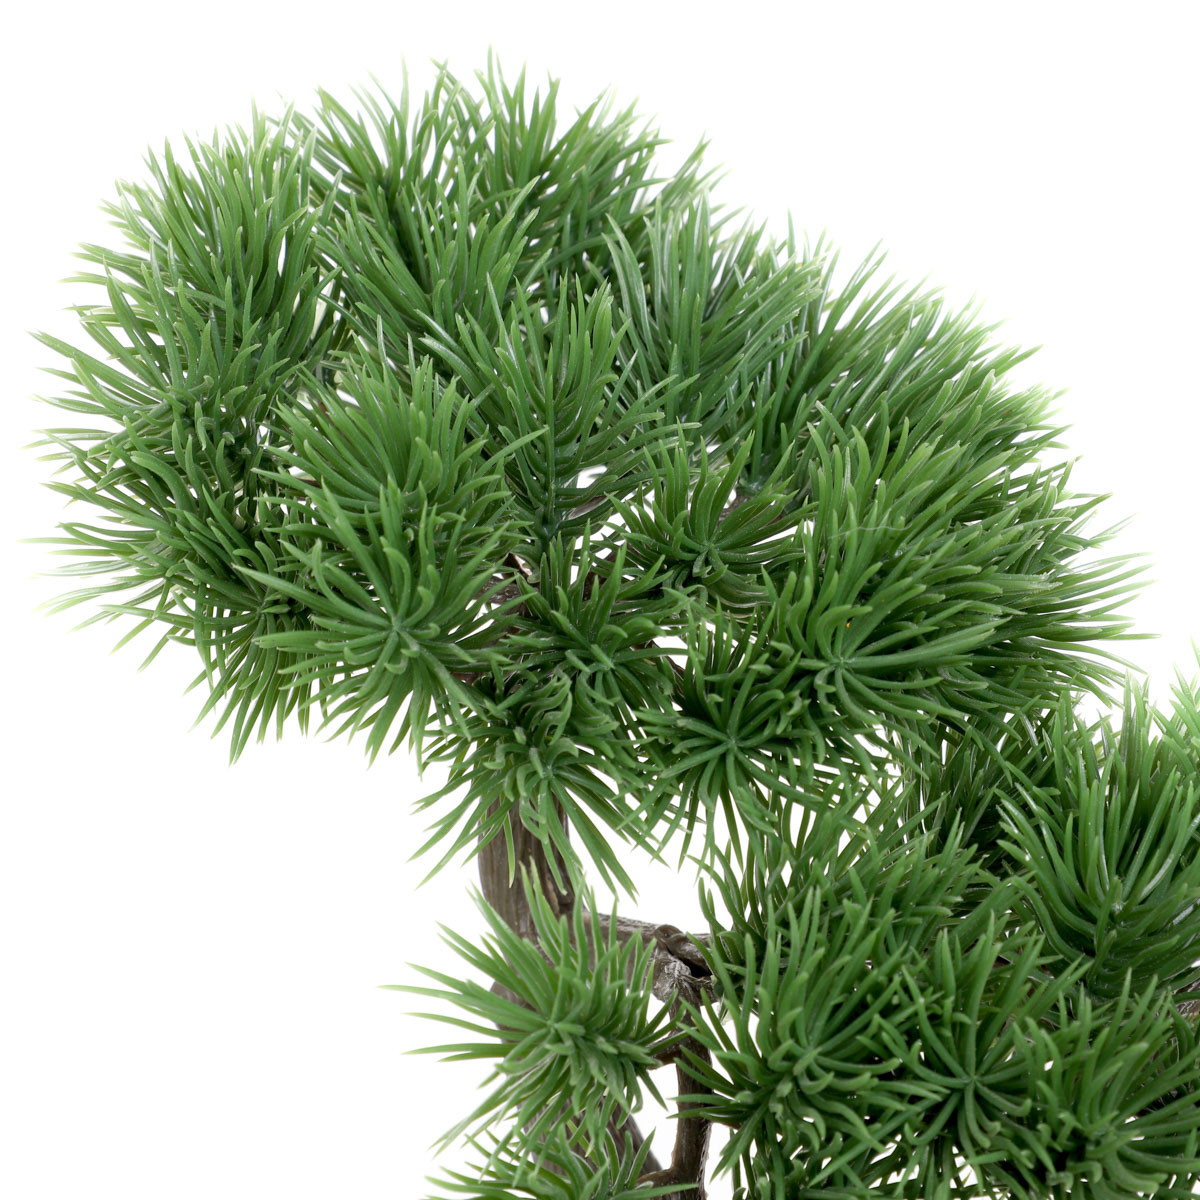 Umelá rastlina SEMELA bonsaj 875095 27 cm